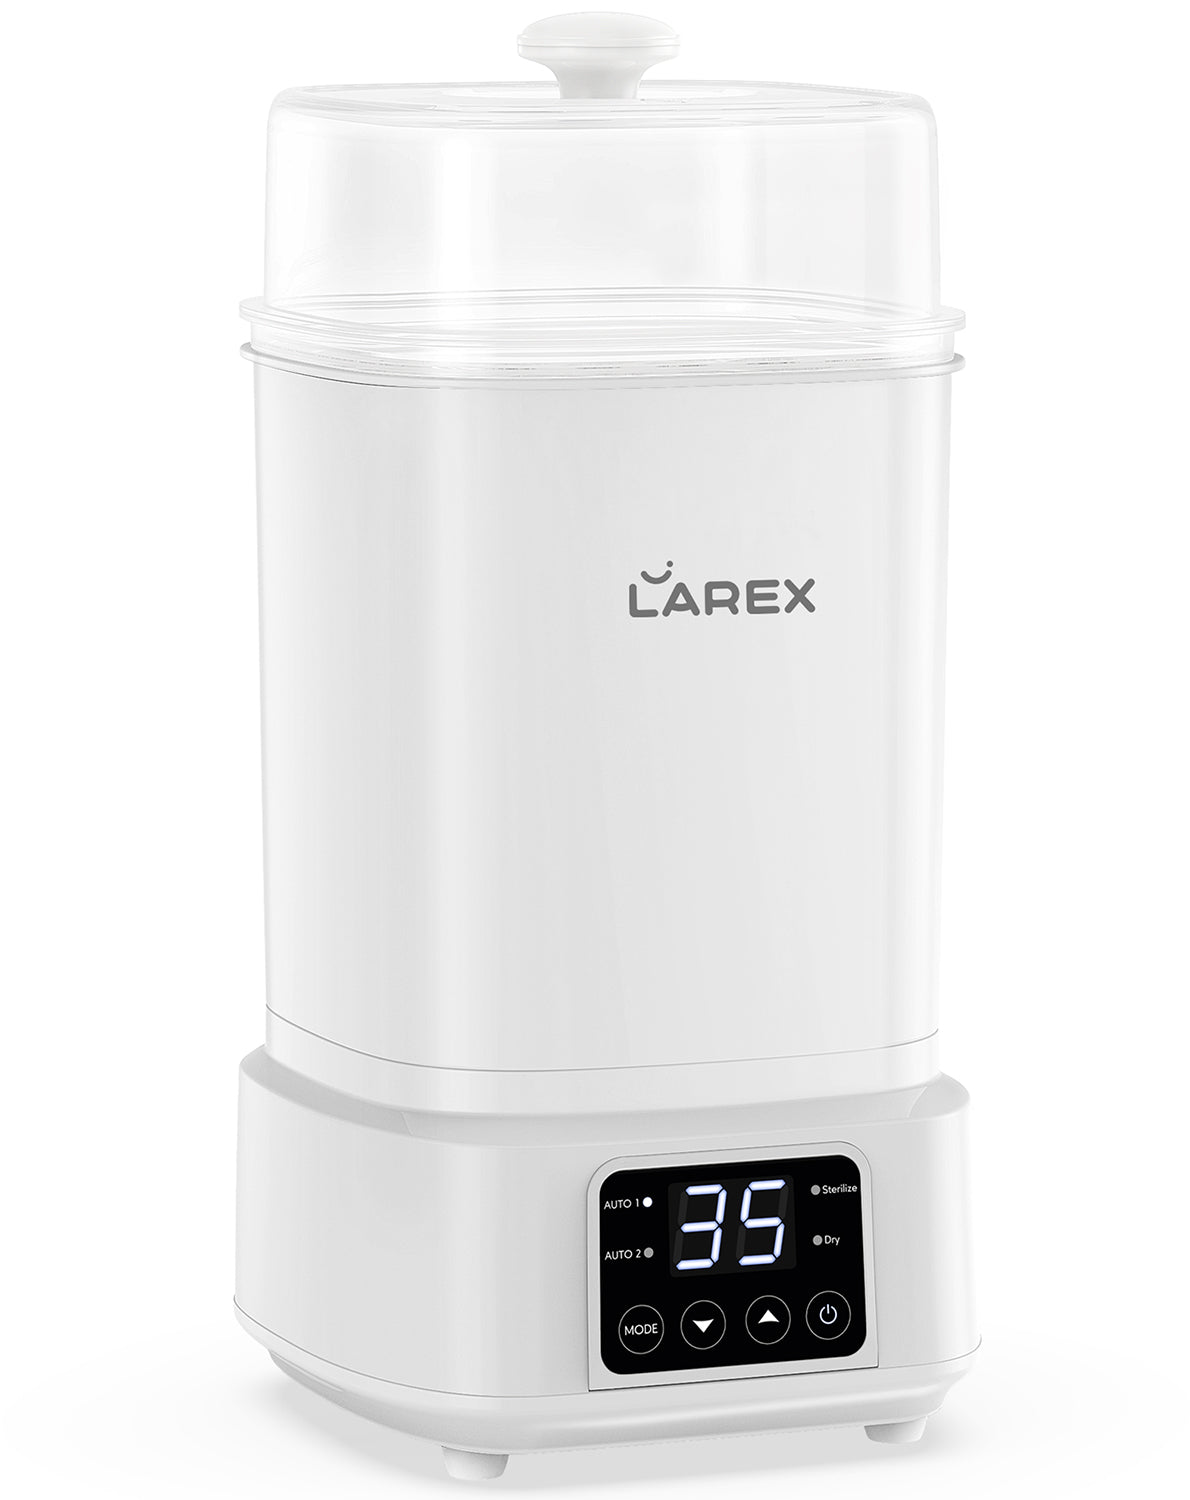 Larex Electric Steam Baby Bottle Sterilizer